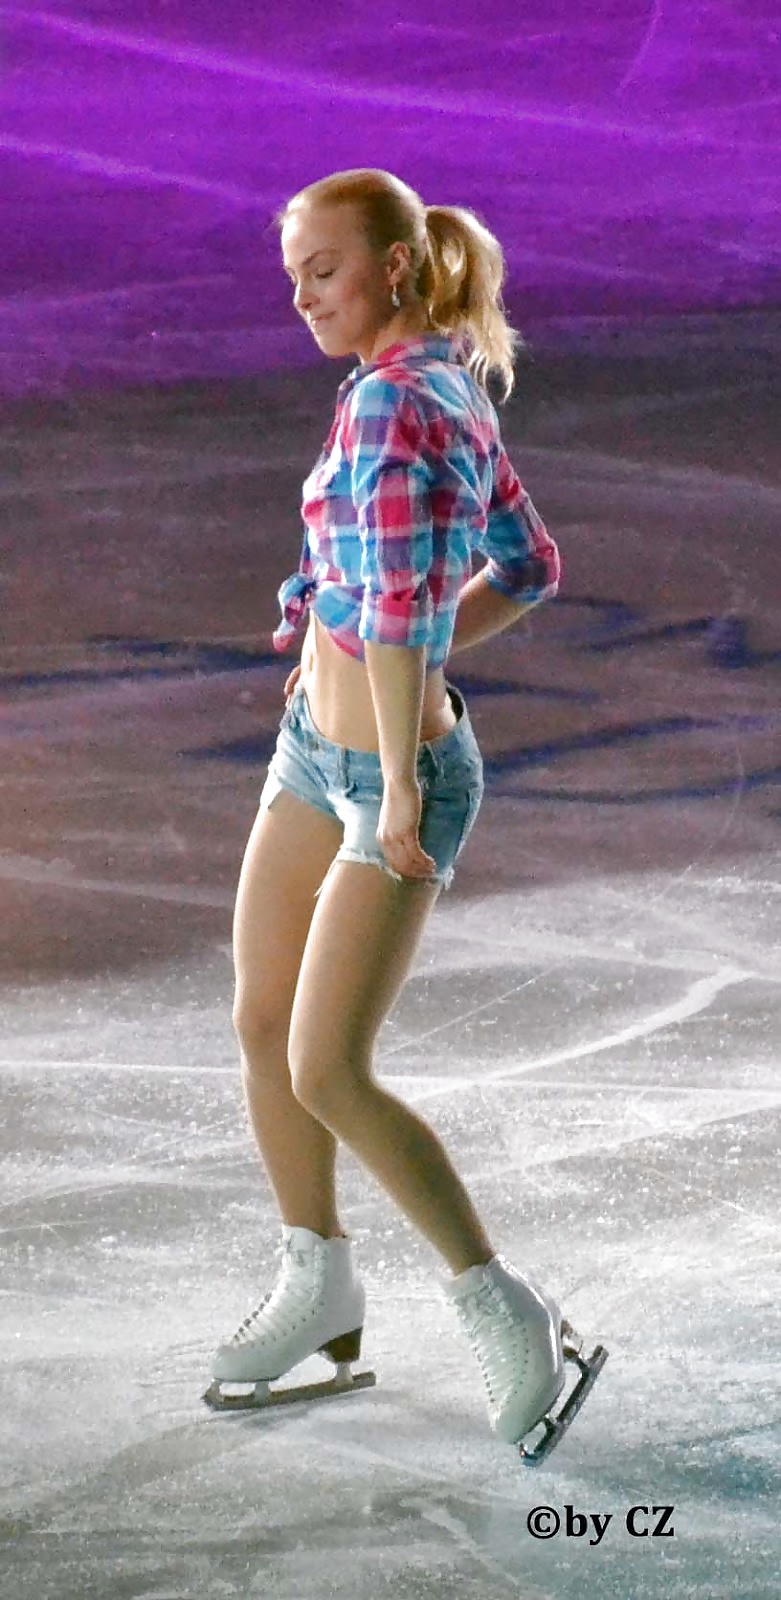 Kiira Korpi - hot figure skater